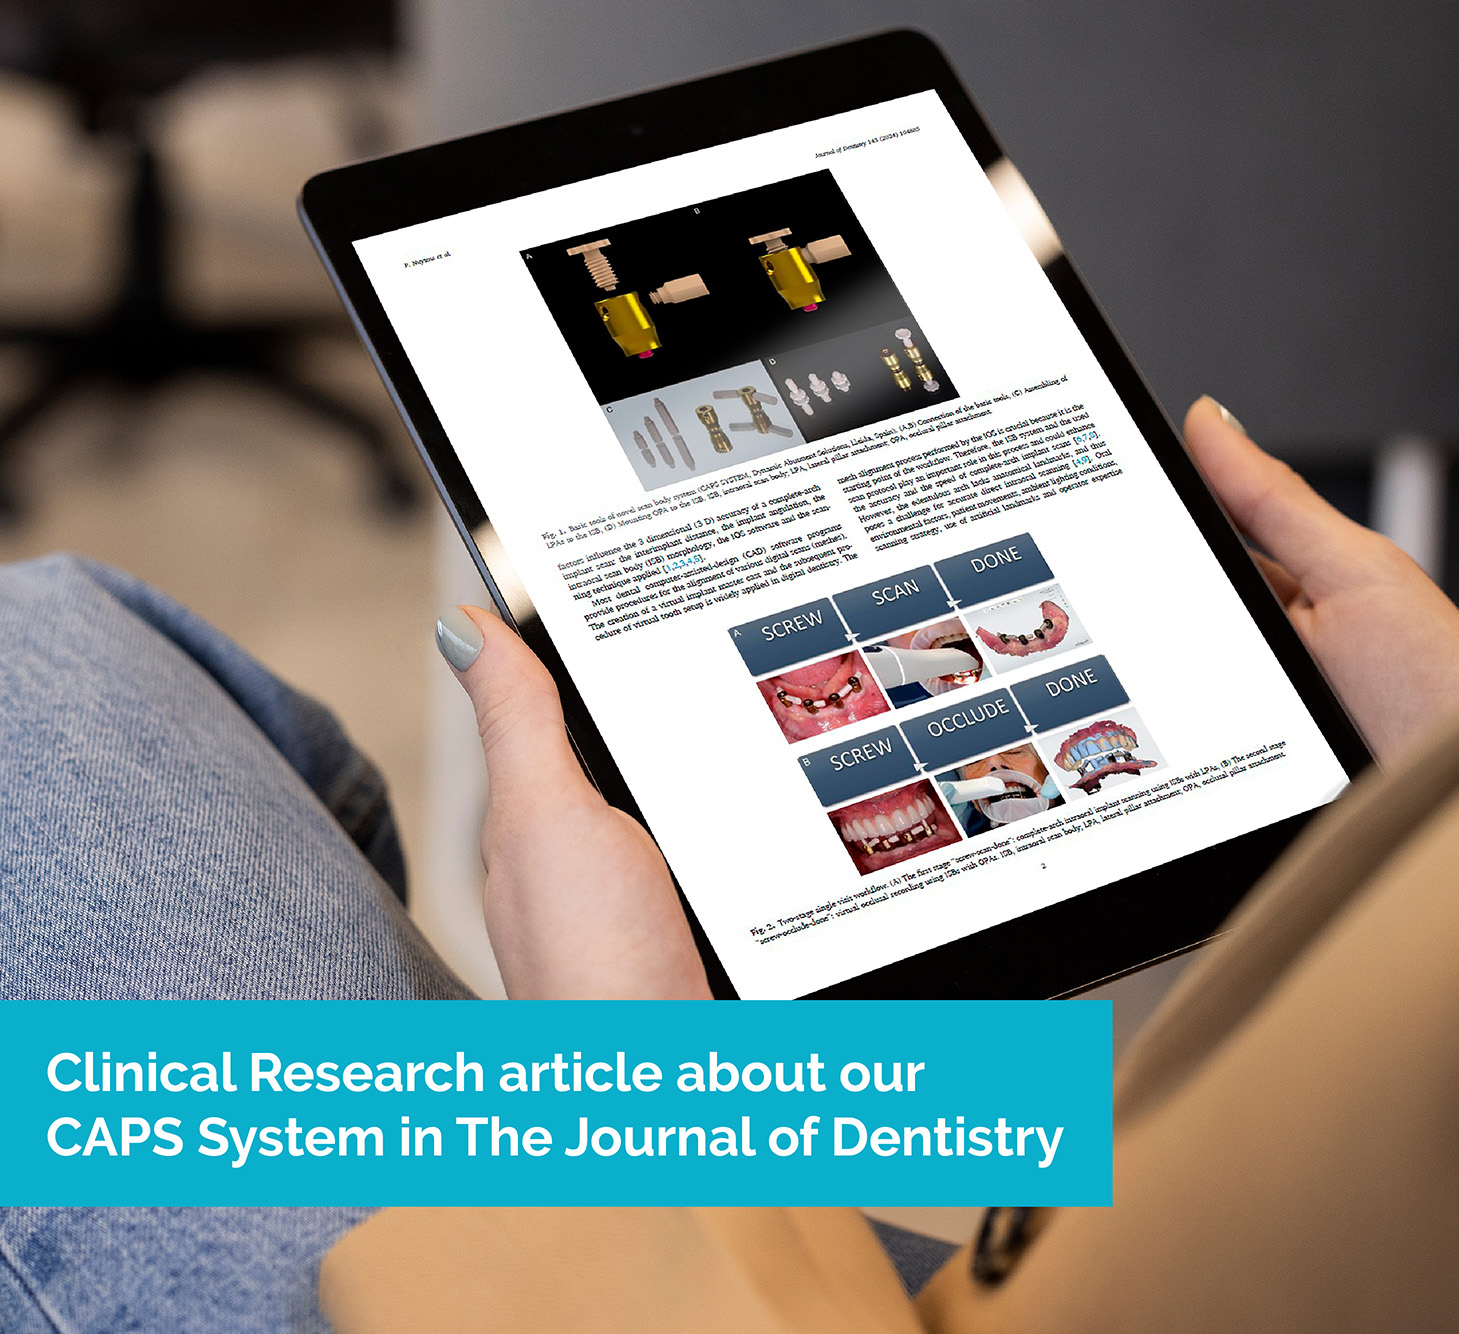 Featured image for “Estudio clínico de nuestro CAPS System en The Journal of Dentistry”